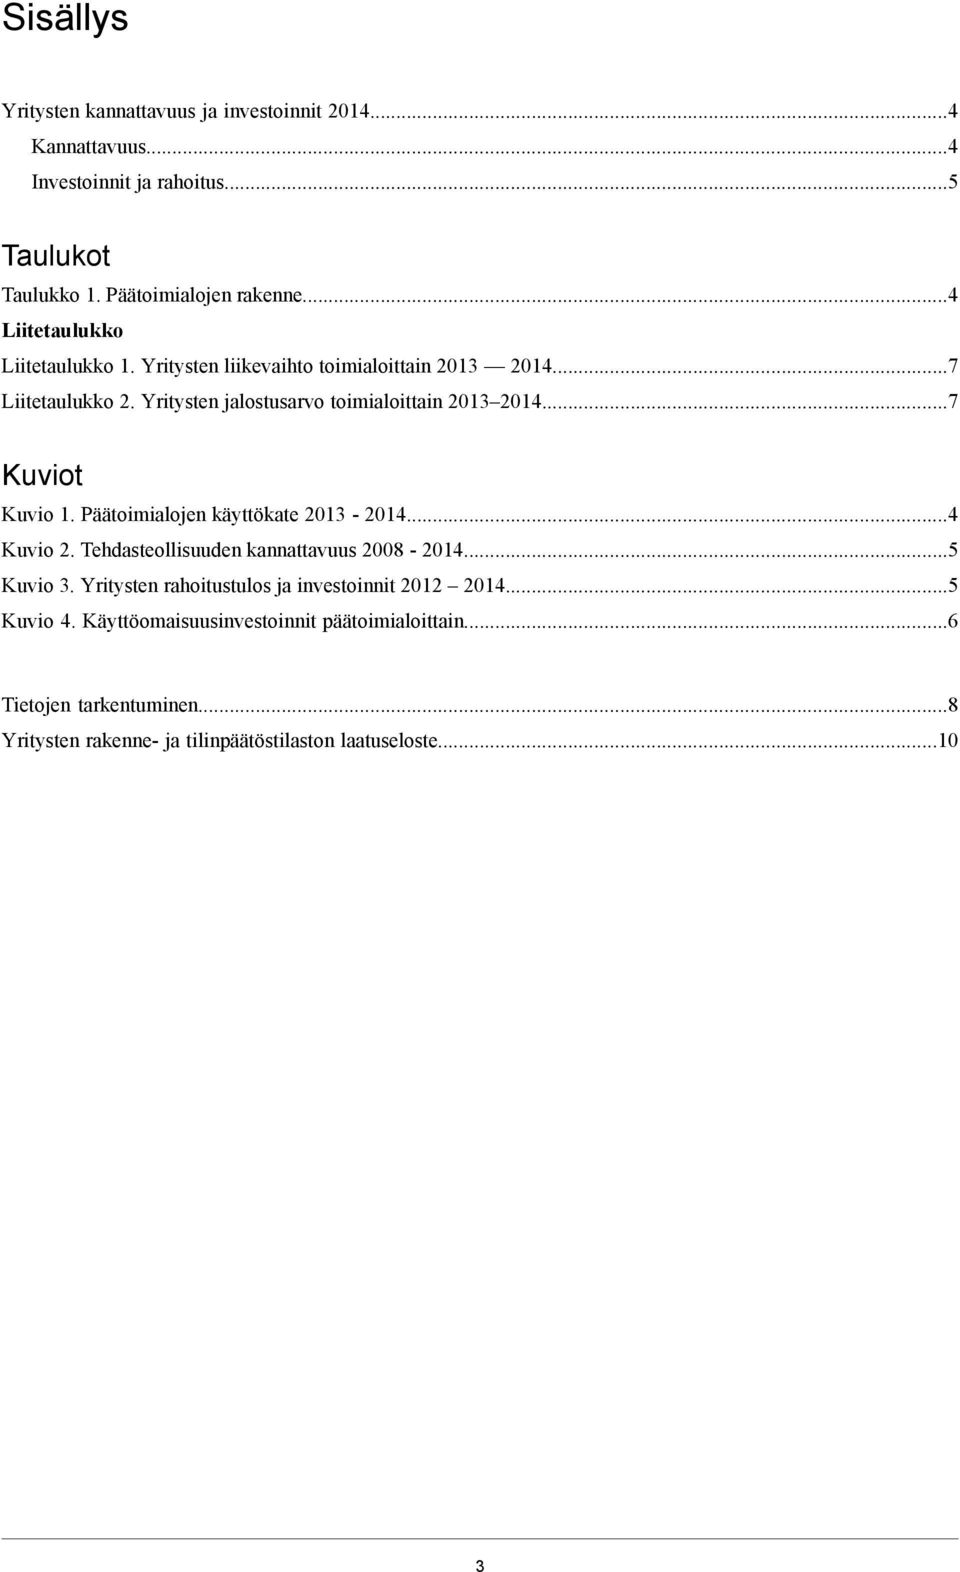 ..7 Kuviot Kuvio 1. Päätoimialojen käyttökate 2013-2014...4 Kuvio 2. Tehdasteollisuuden kannattavuus 2008-2014...5 Kuvio 3.